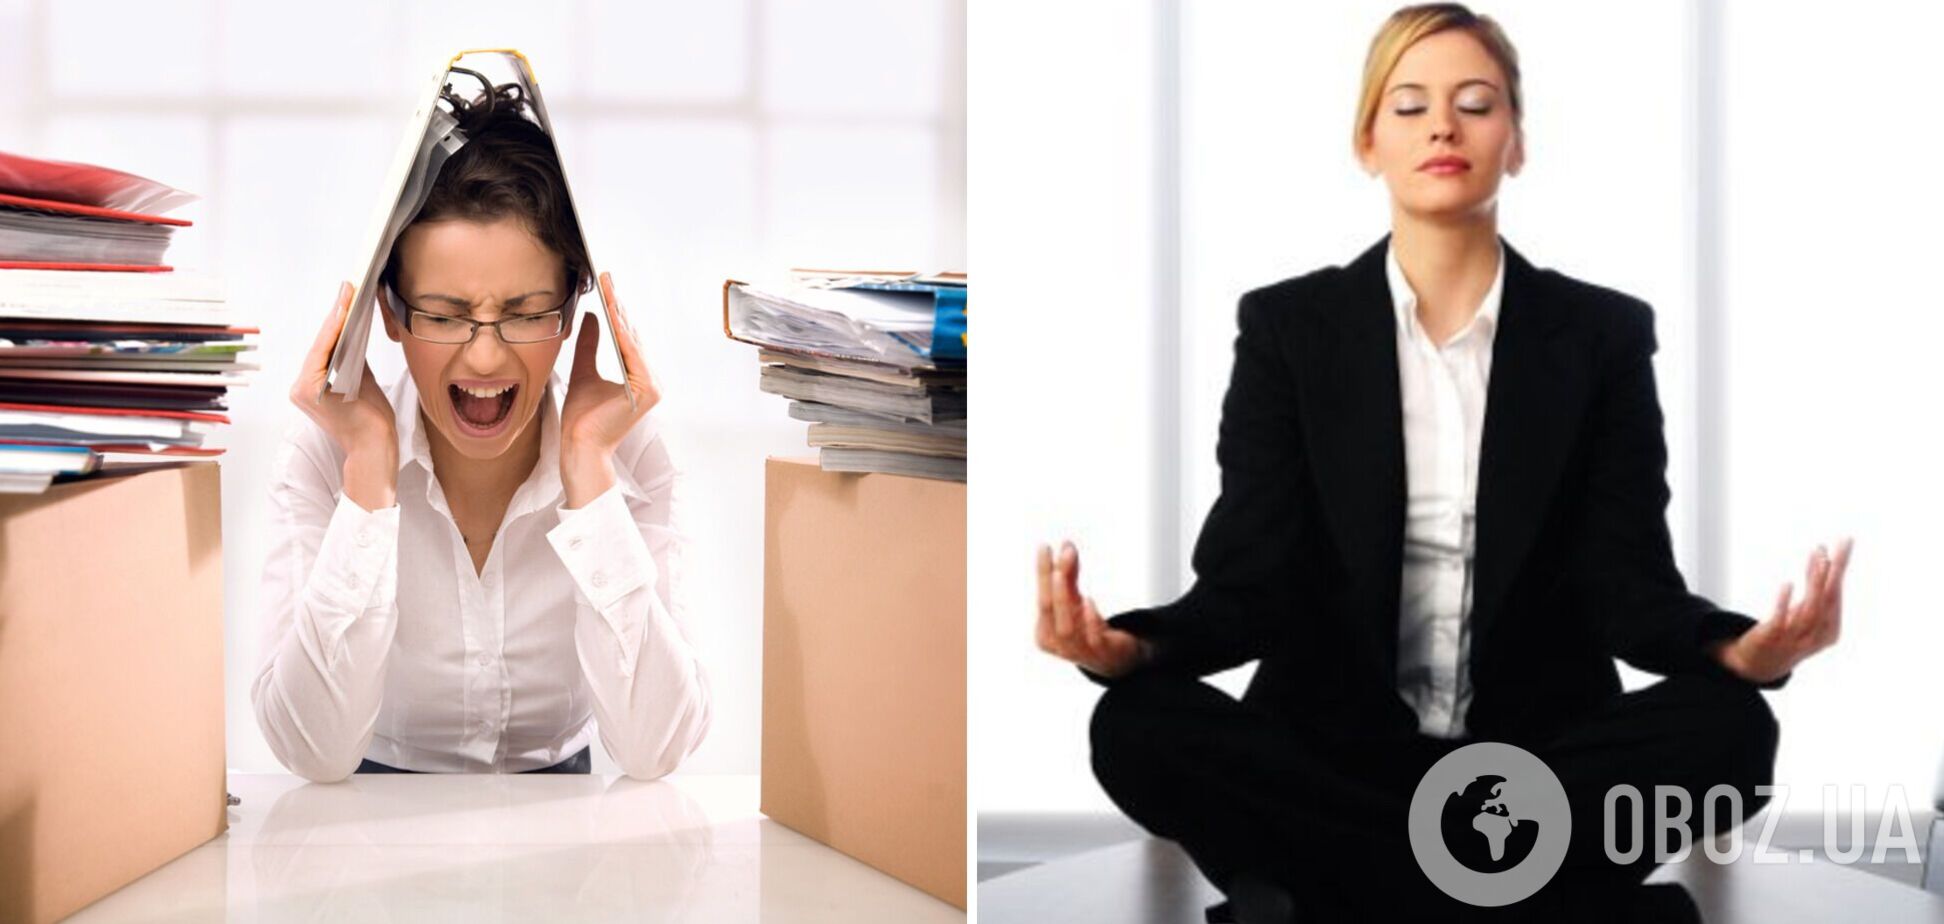 6 признаков того, что вы стрессоголик